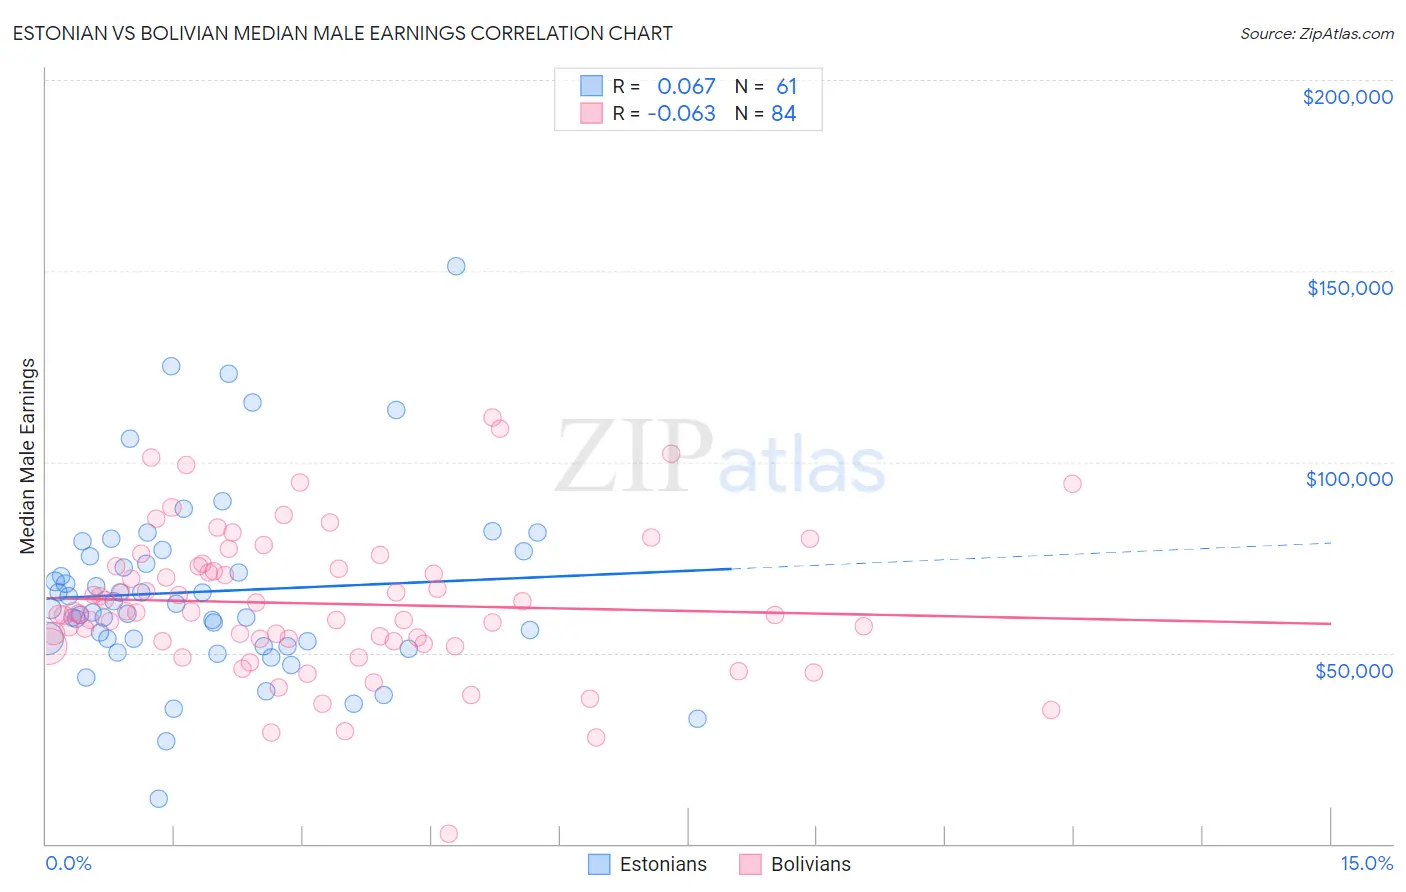 Estonian vs Bolivian Median Male Earnings